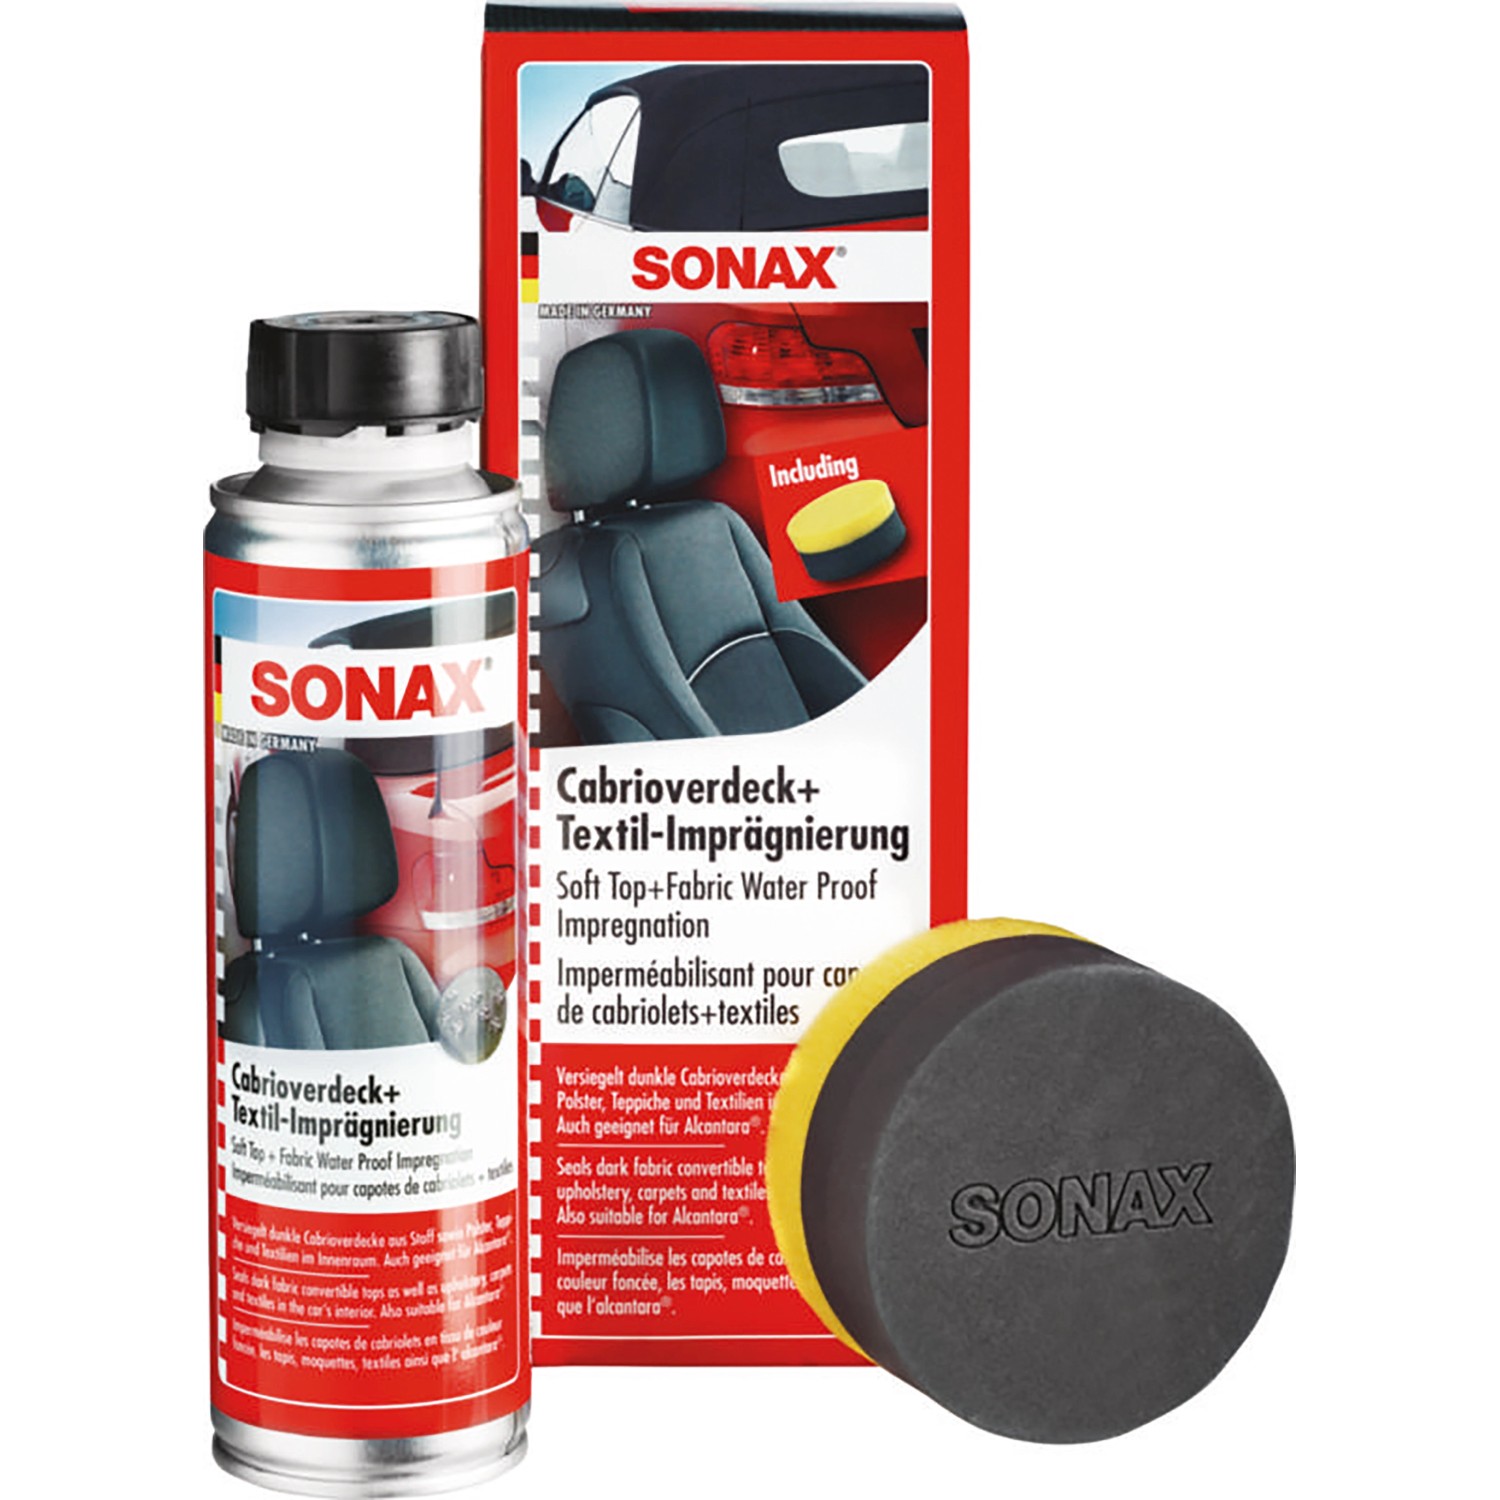 Sonax Cabrioverdeck- und Textil-Imprägnierung kaufen bei OBI